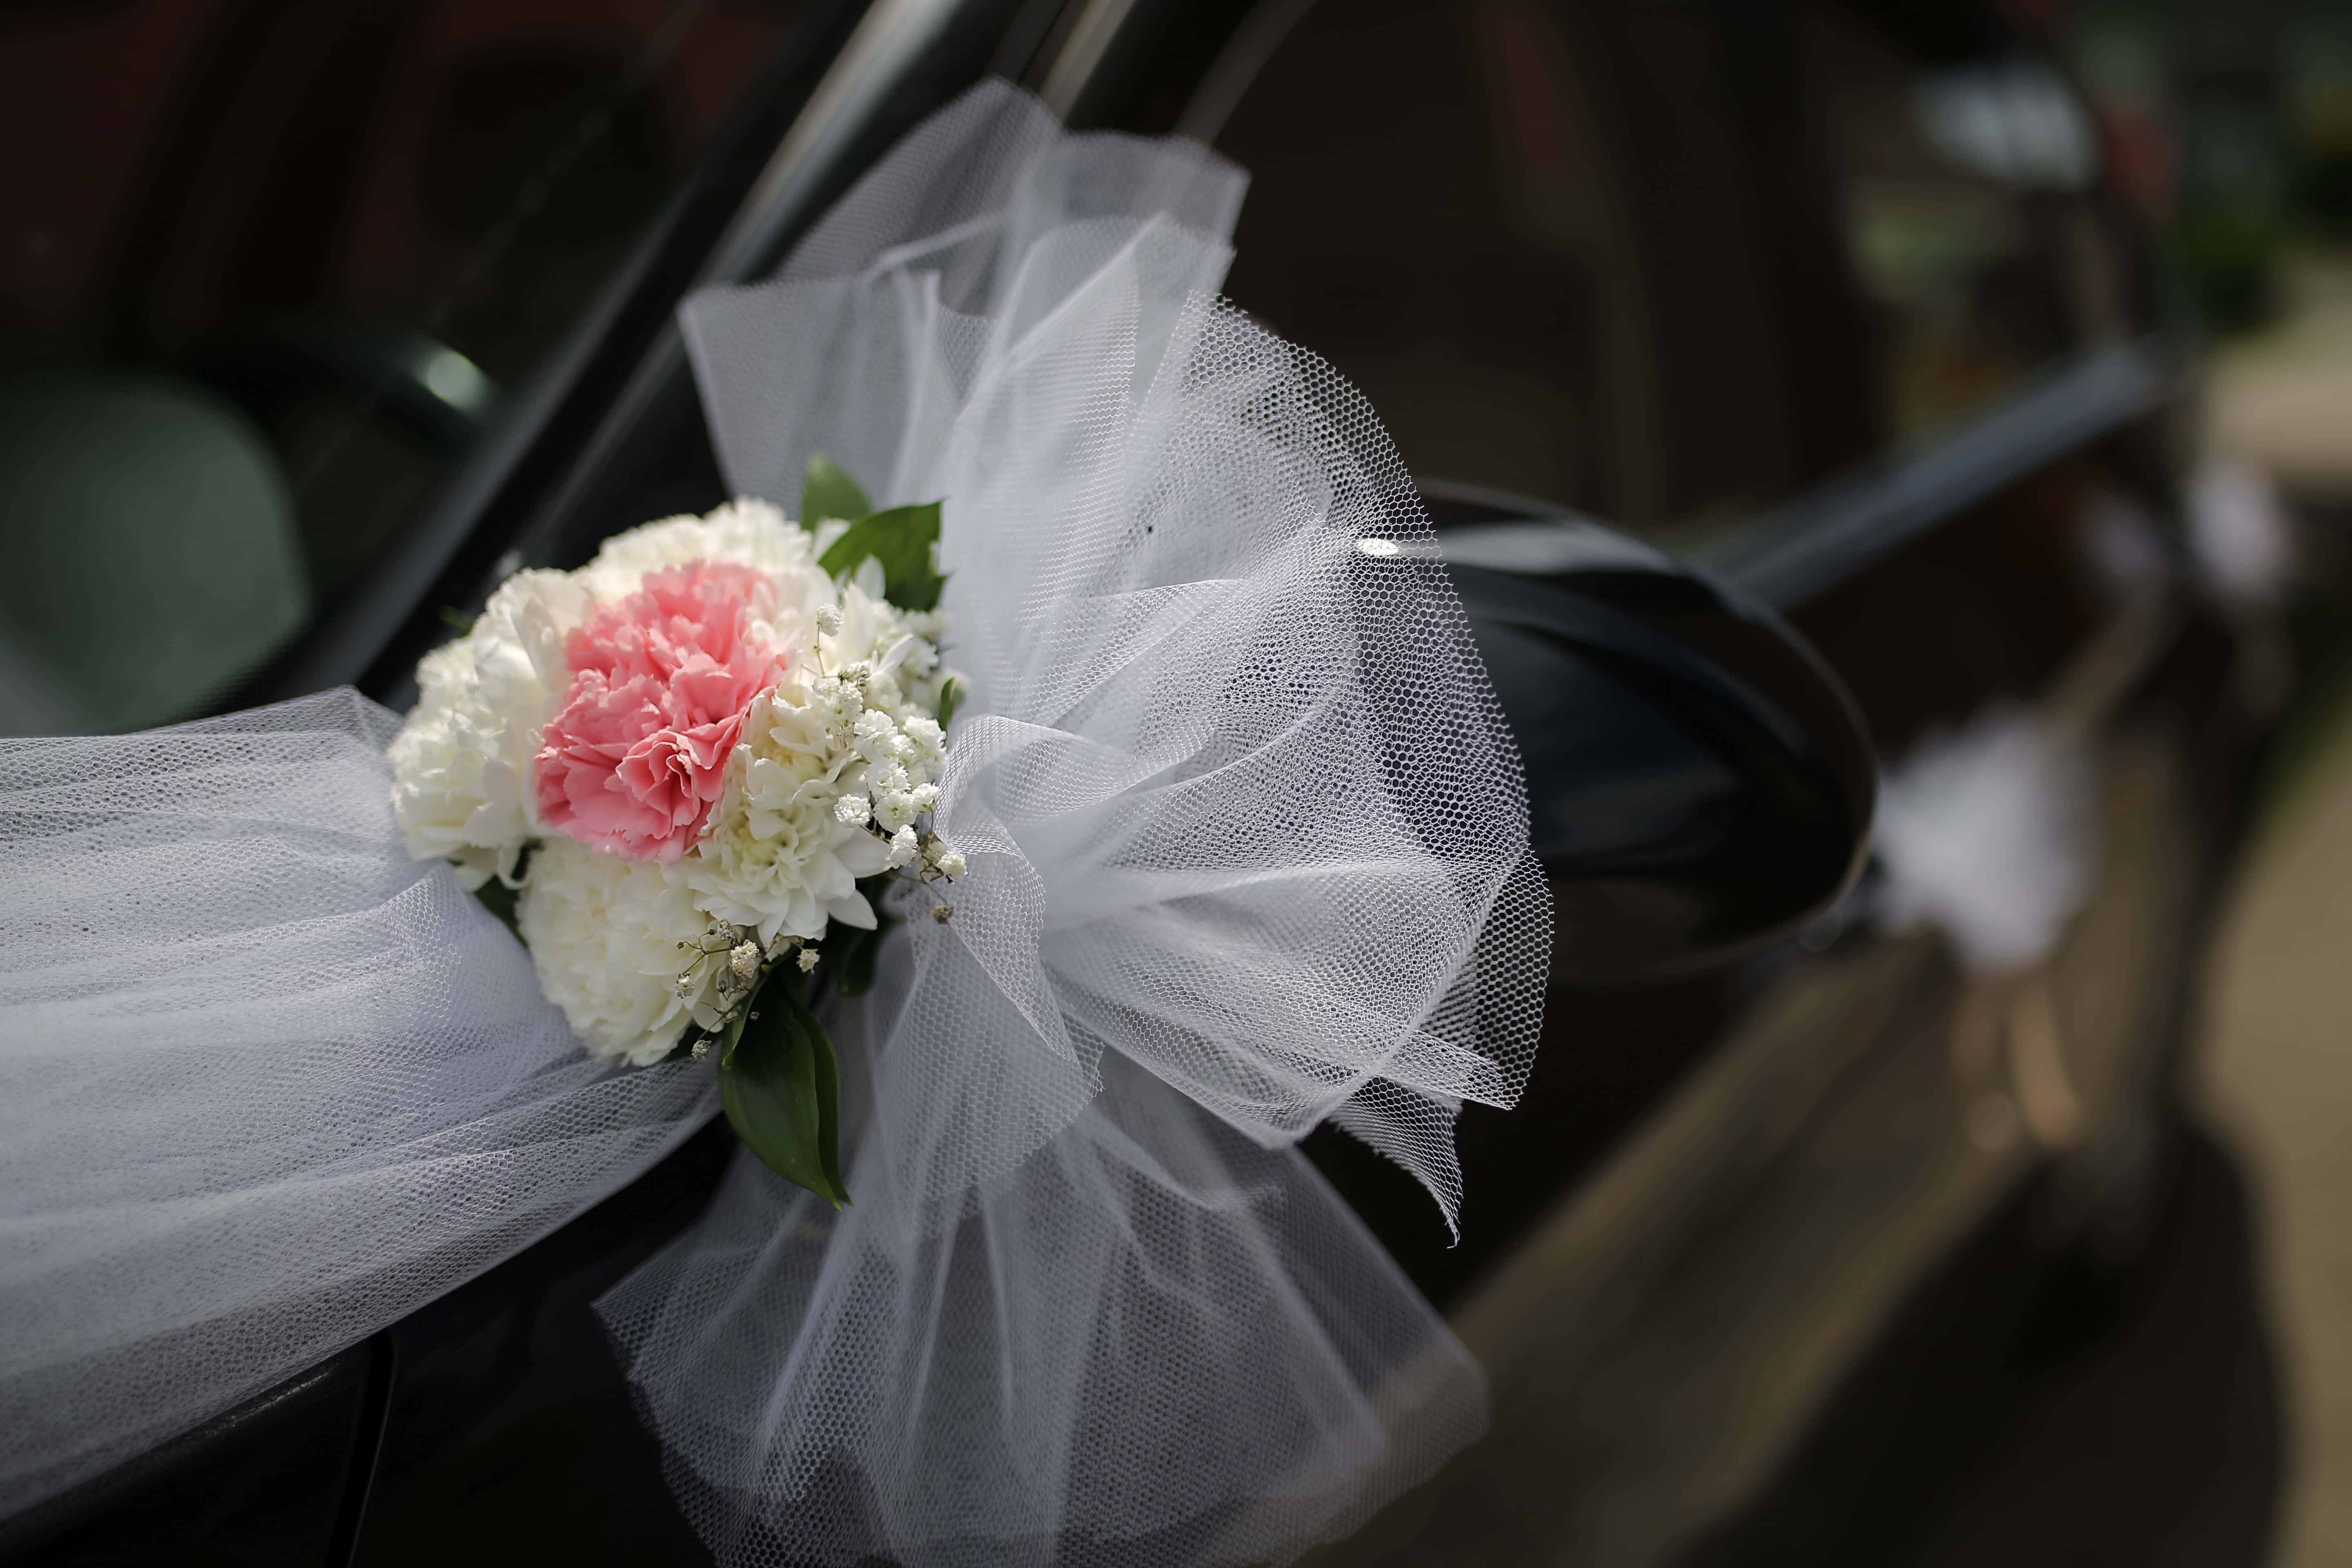 Validatie Zachtmoedigheid gevolgtrekking Gratis afbeelding: auto, spiegel, regeling, sedan auto, detail, bruidsboeket,  bruiloft, bloemen, romantiek, boeket